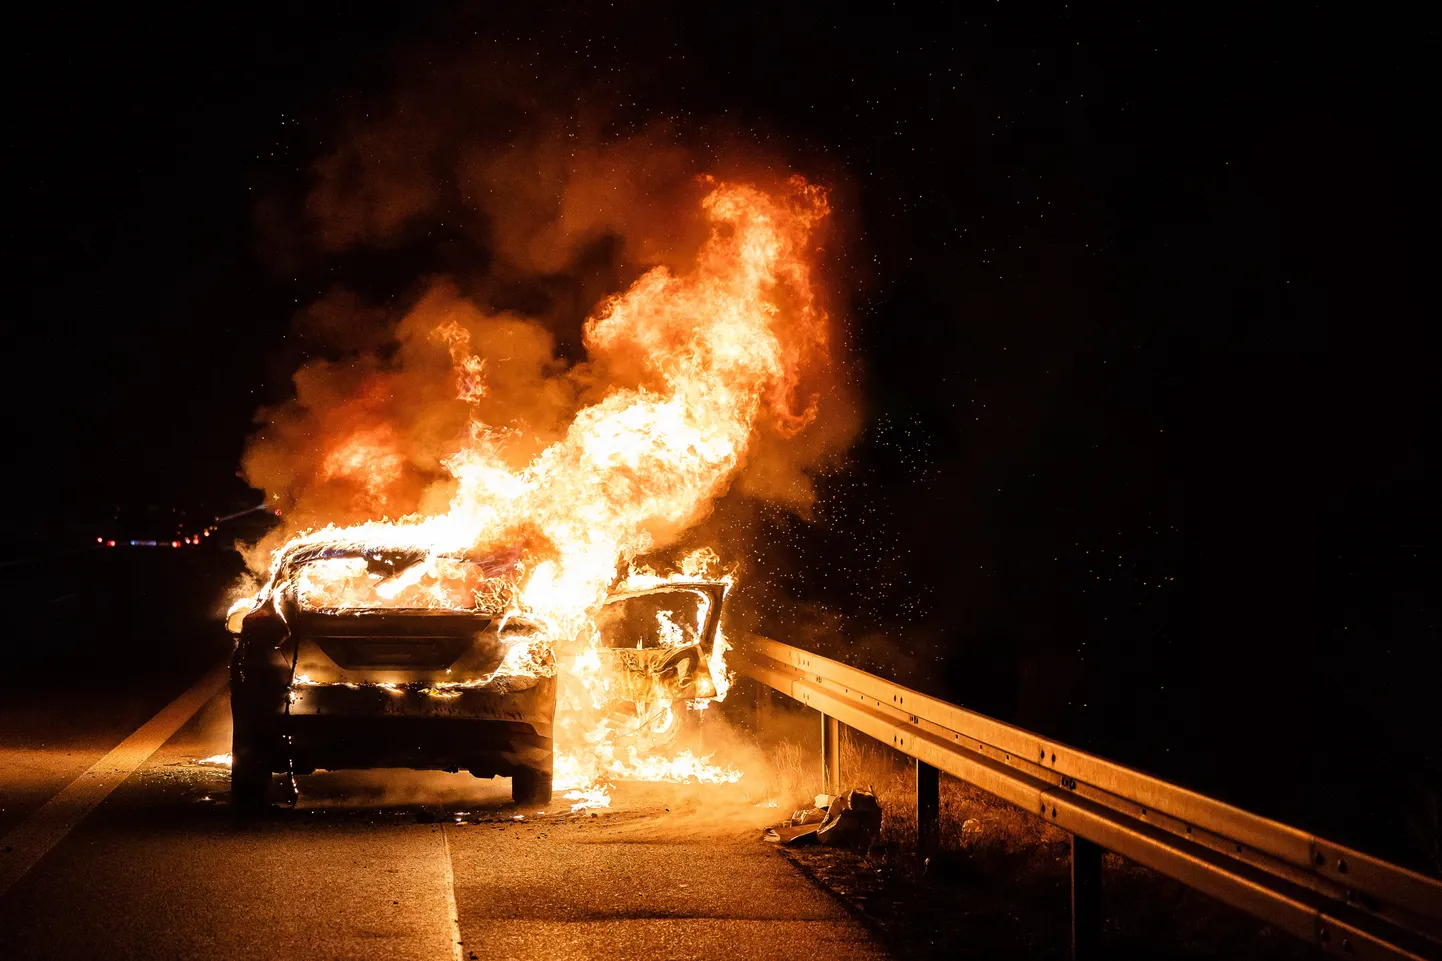 Автомобиль горит. Иллюстративное фото